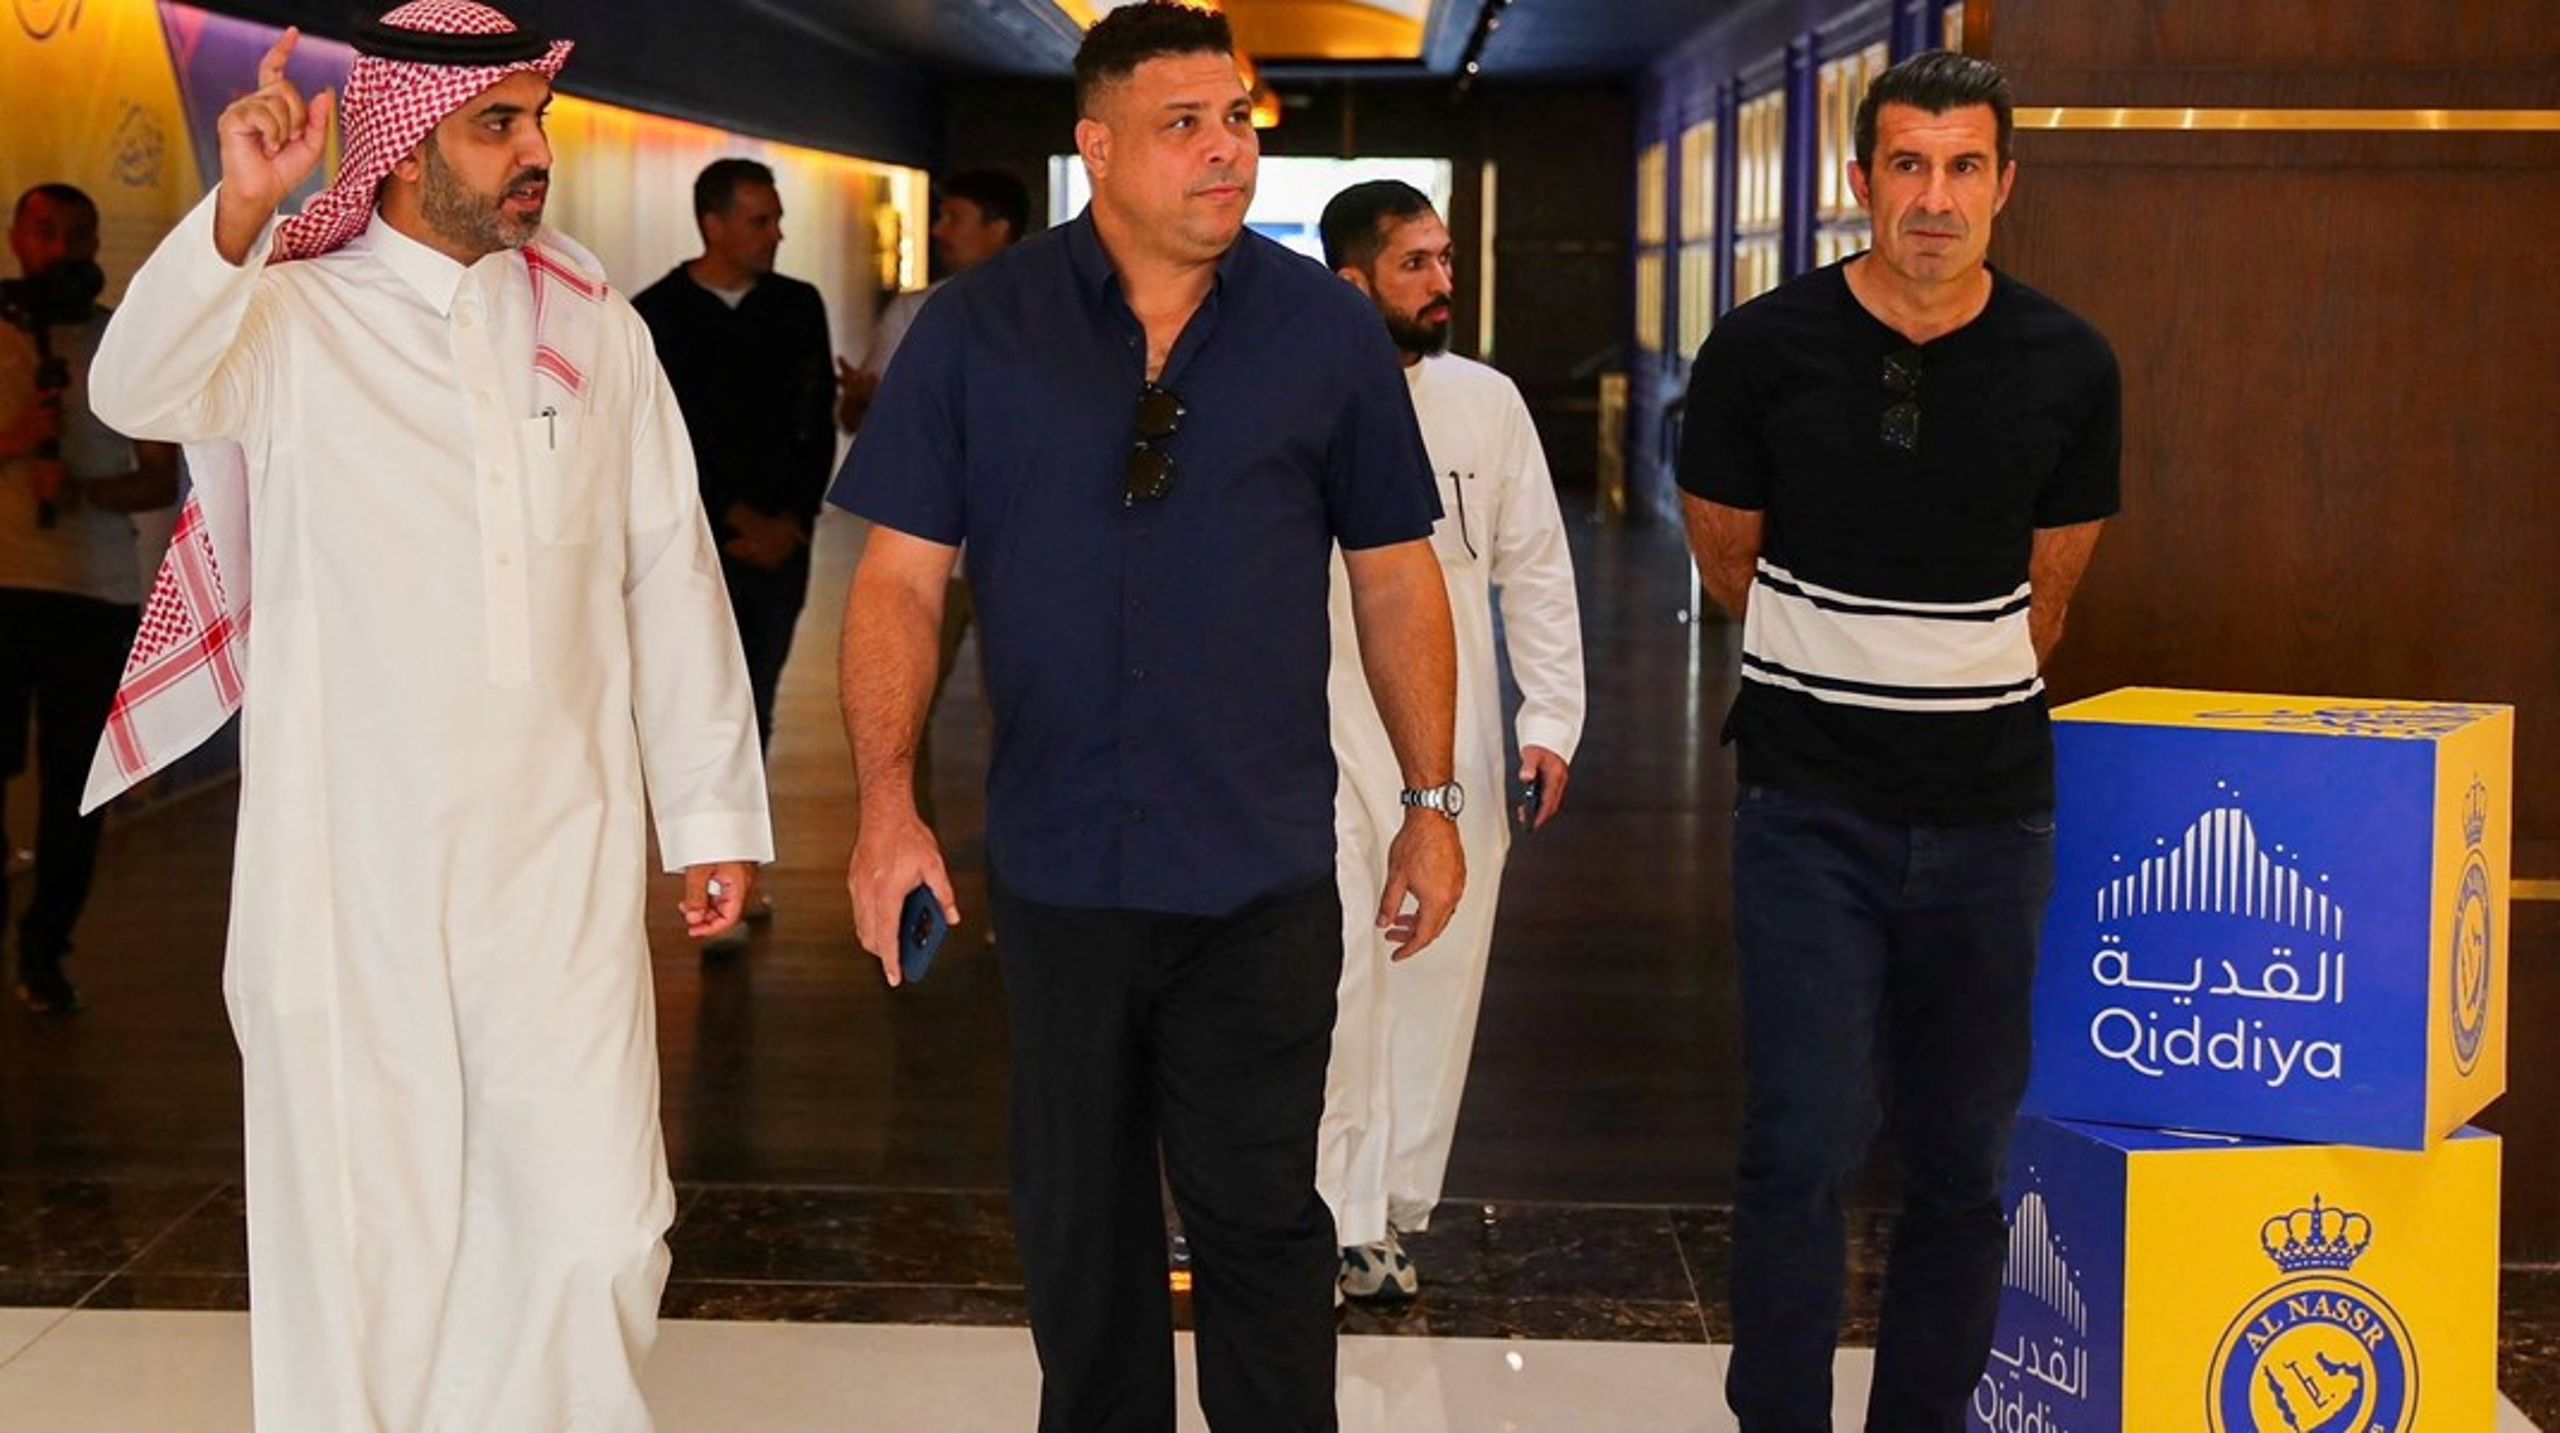 Play the Game har kortlagt Saudi-Arabiens vidtforgrenede økonomiske interesser i international sport. Her ses de pensionerede fodboldstjerner Luis Figo og brasilianske Ronaldo på besøg i styret under stort presseopbud.